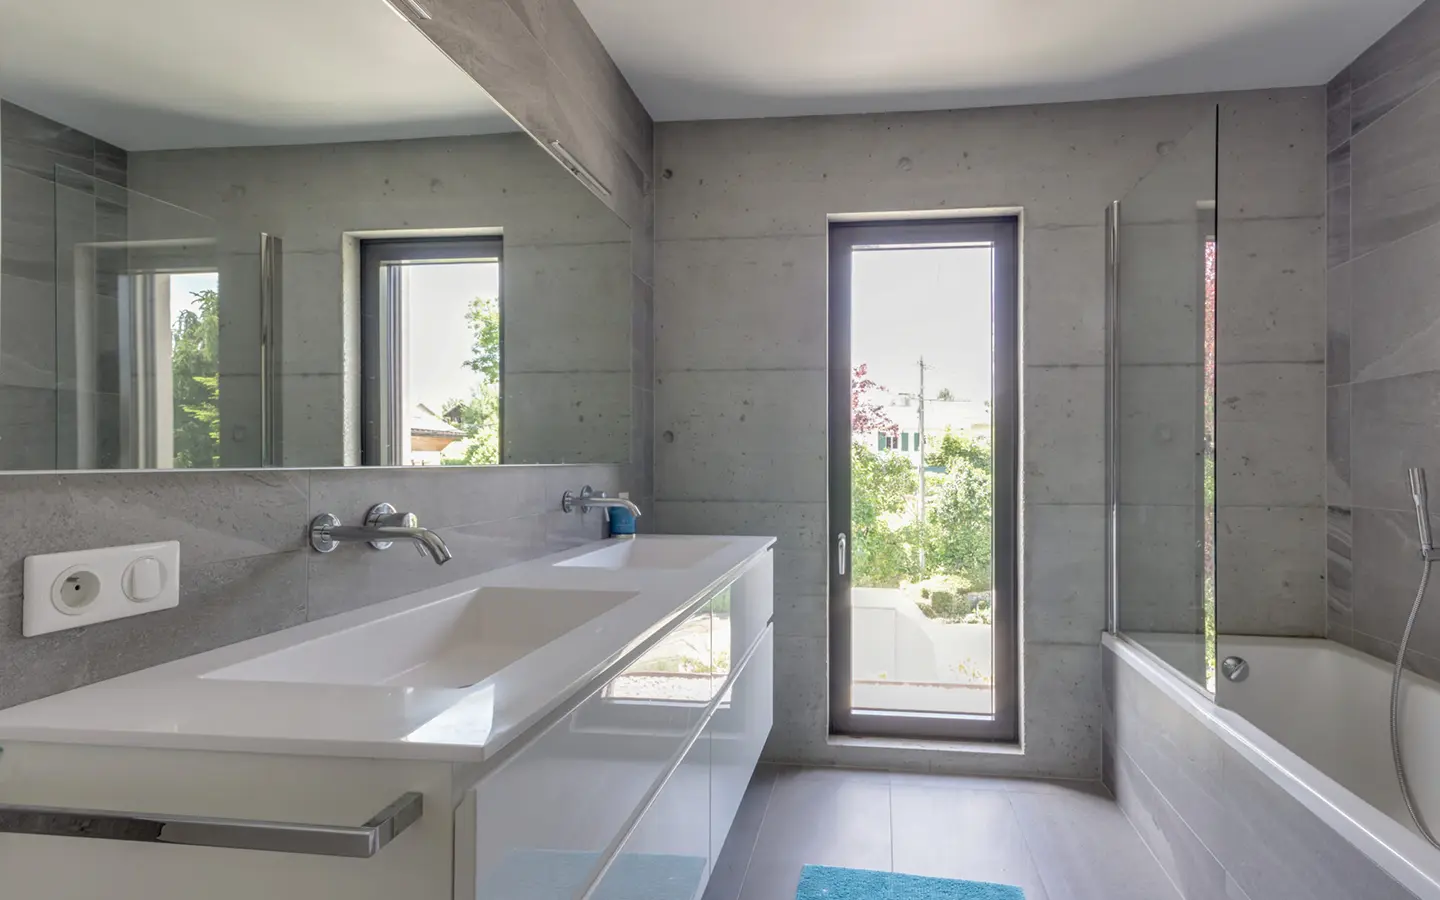 Achat immobilier Annecy-le-vieux maison moderne grande salle de bains